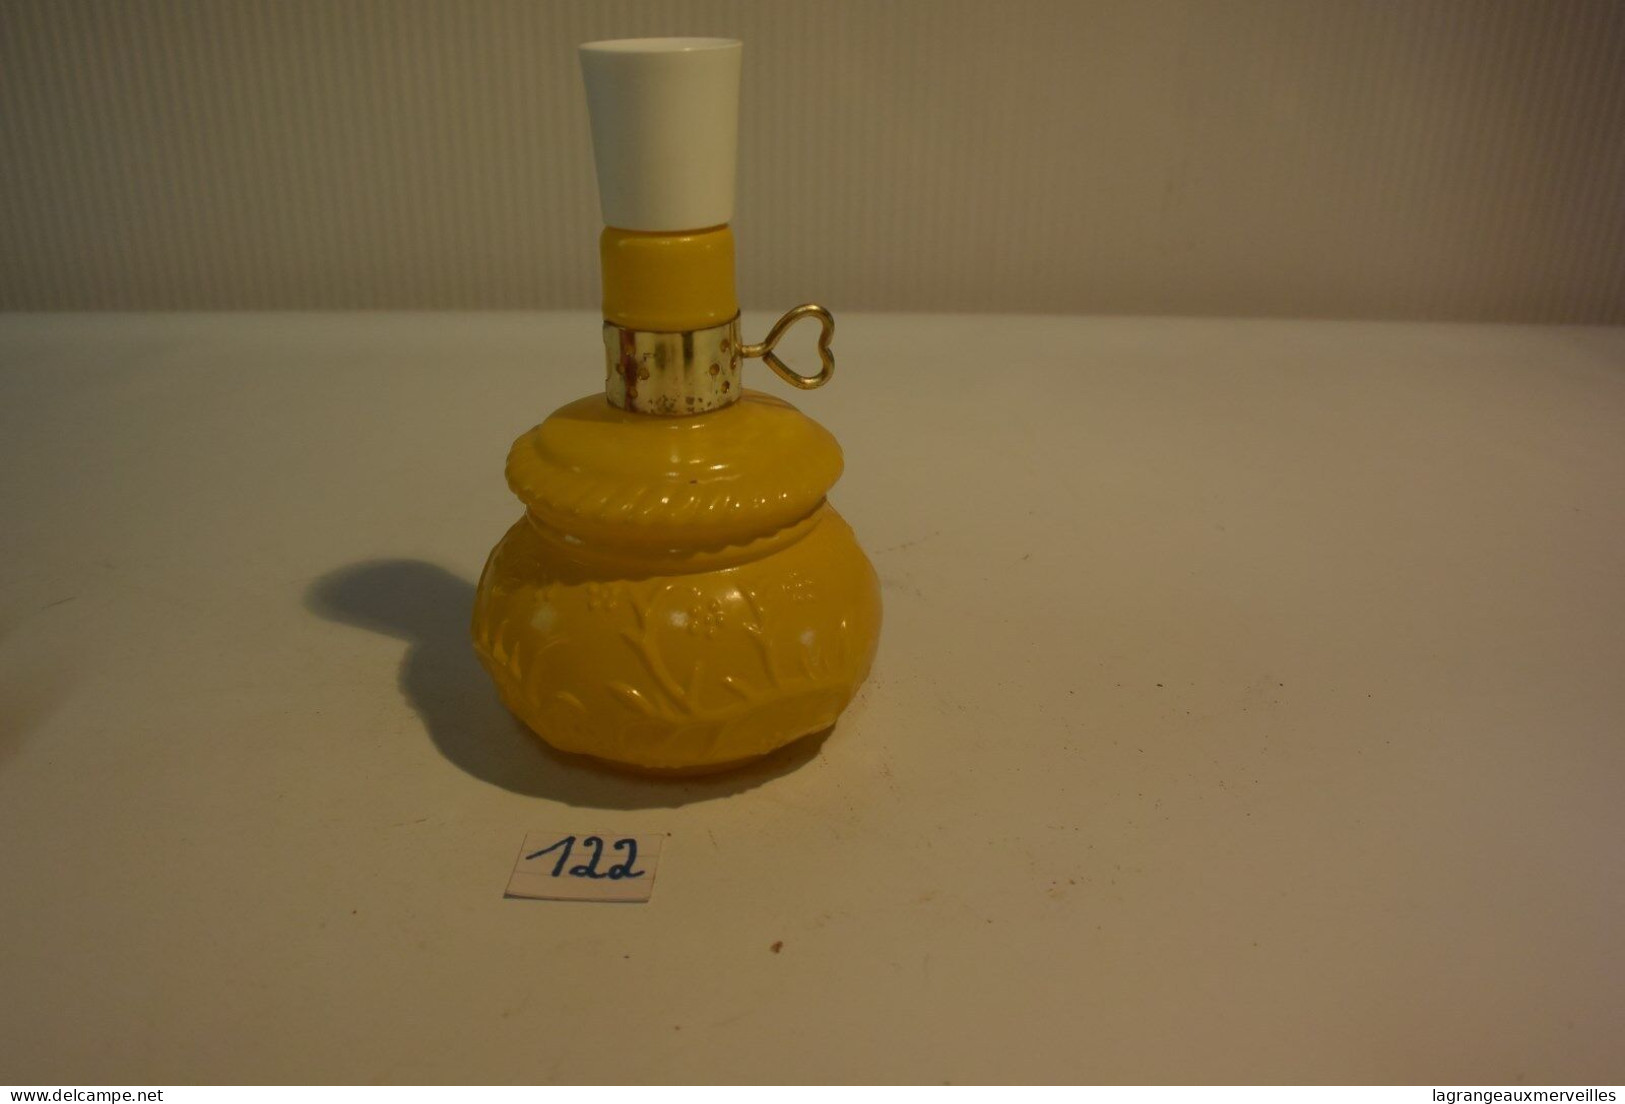 C122 Flacon De Parfum Vintage AVON De Collection Charisma Poule - Miniatures Modernes Vides